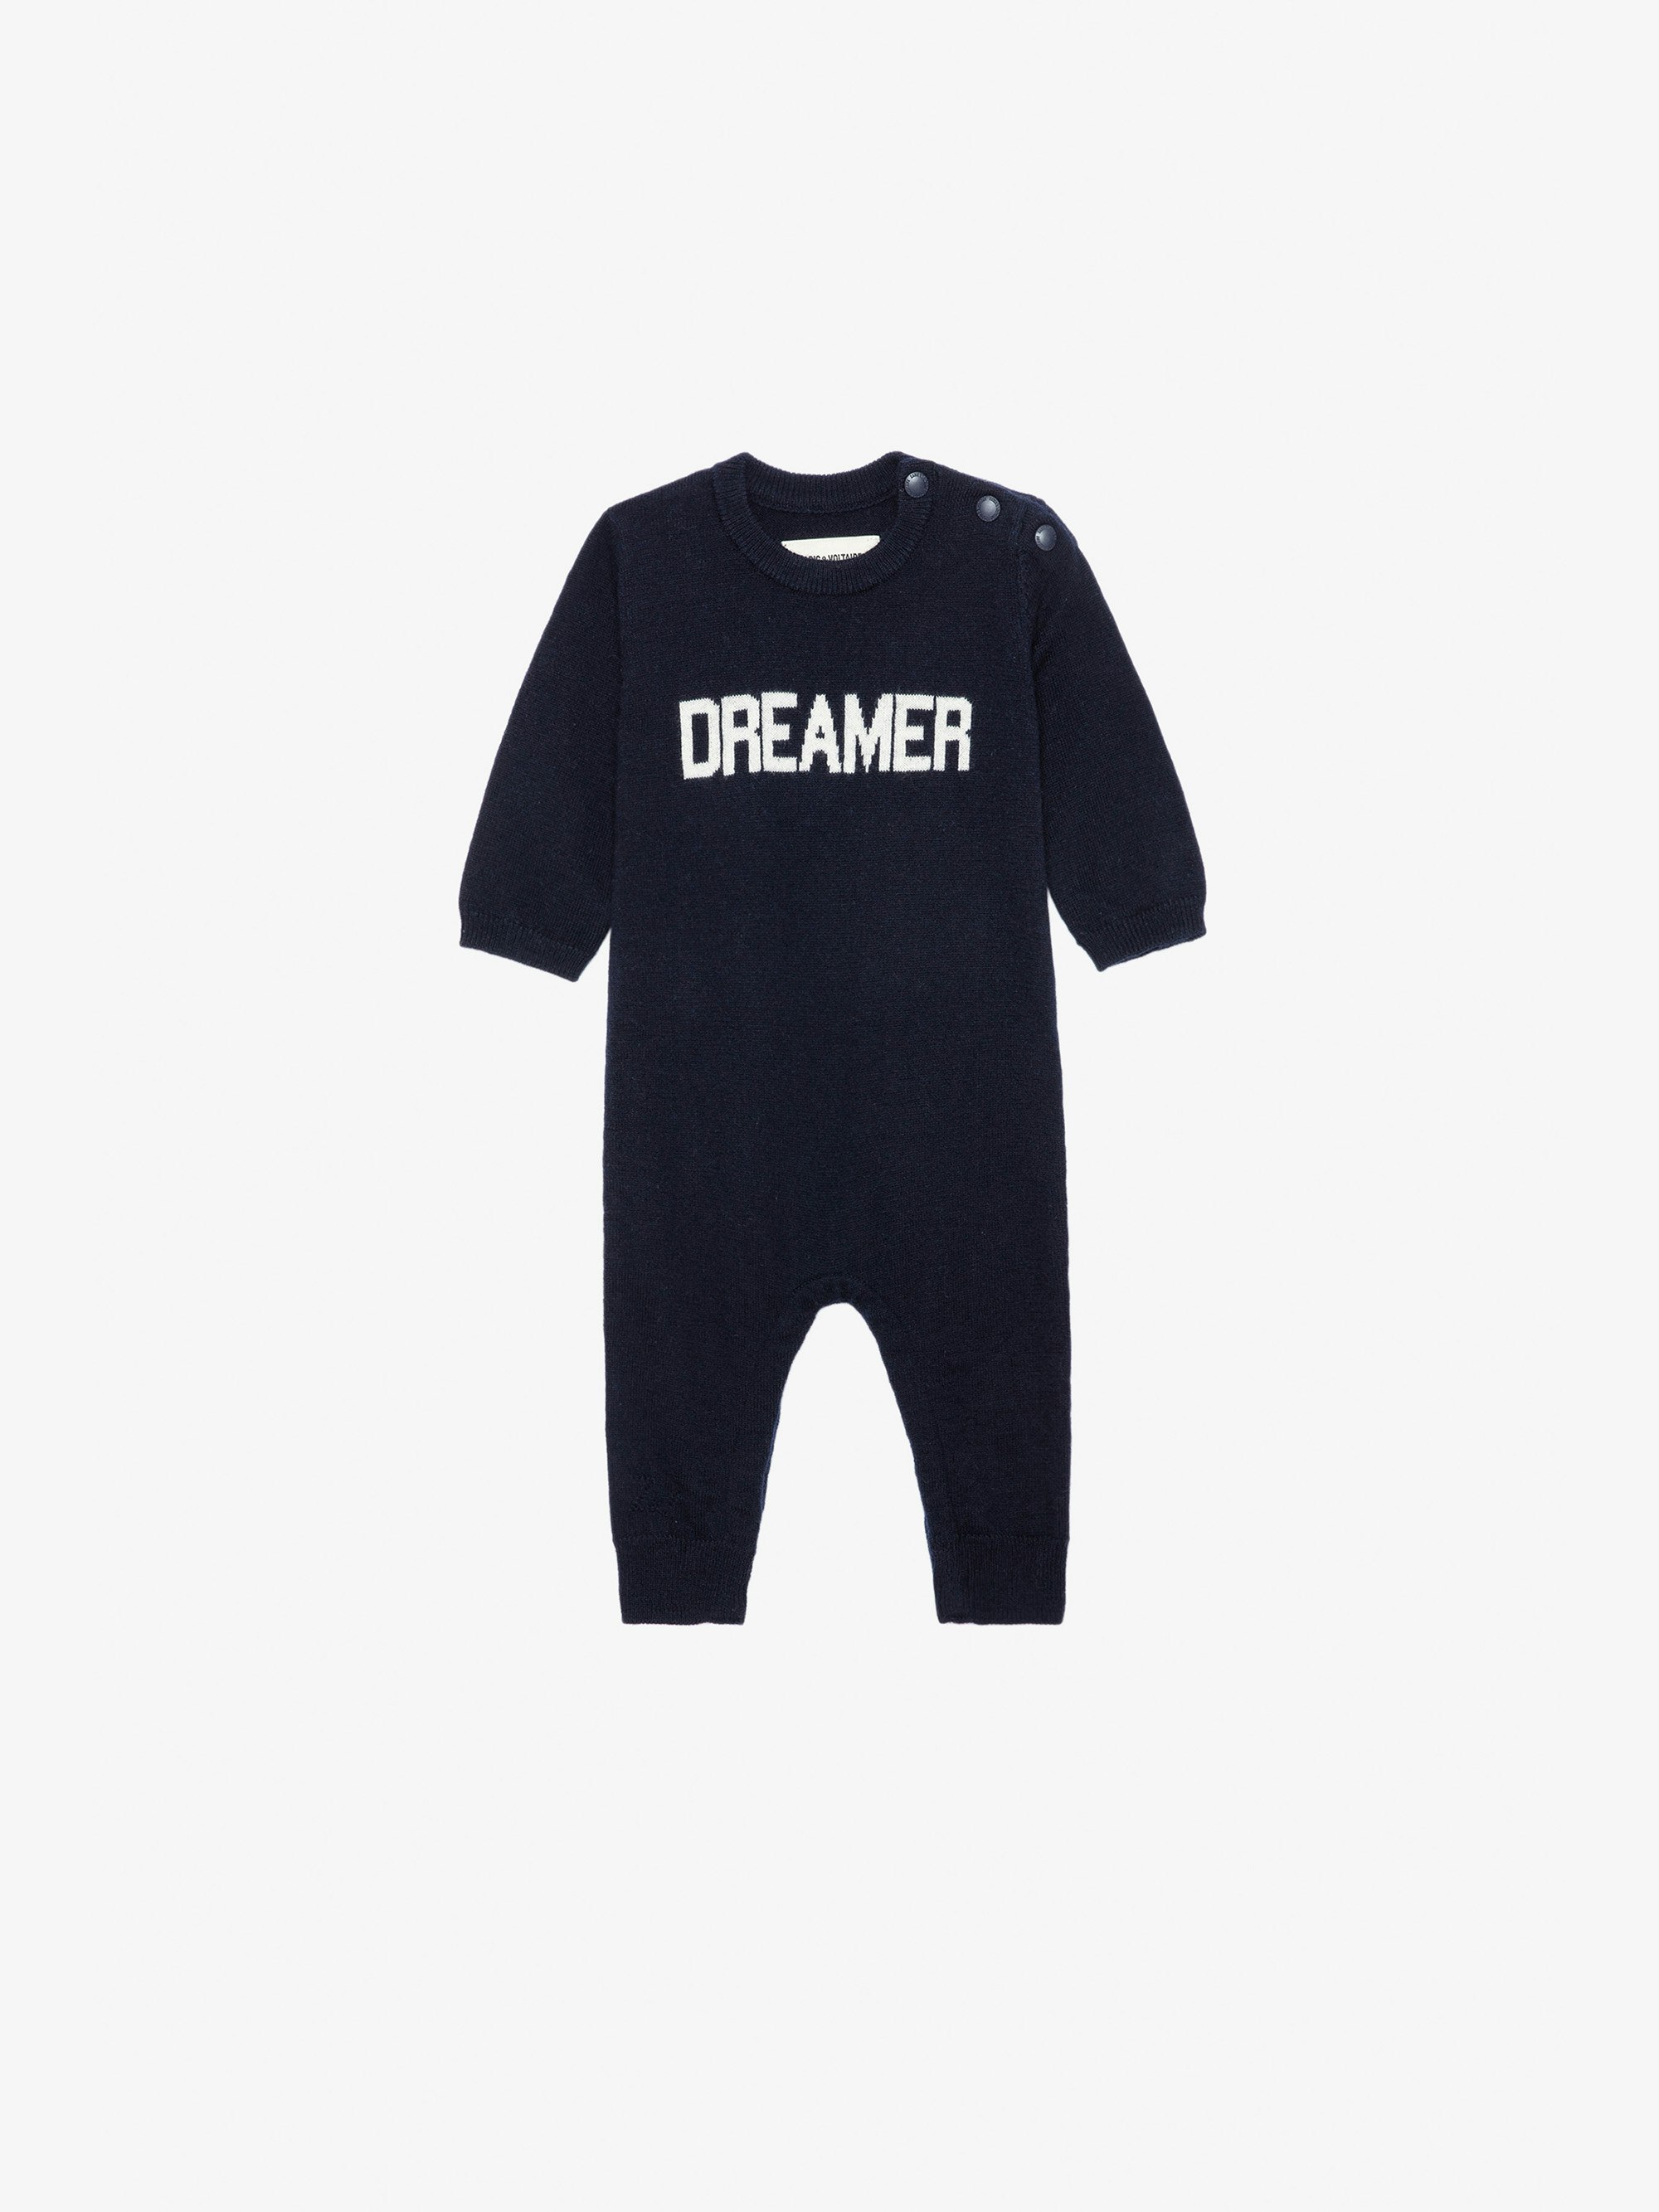 Tuta intera Didou Neonato - Tuta intera lavorata a maglia blu navy con scritta "Dreamer" da neonato.